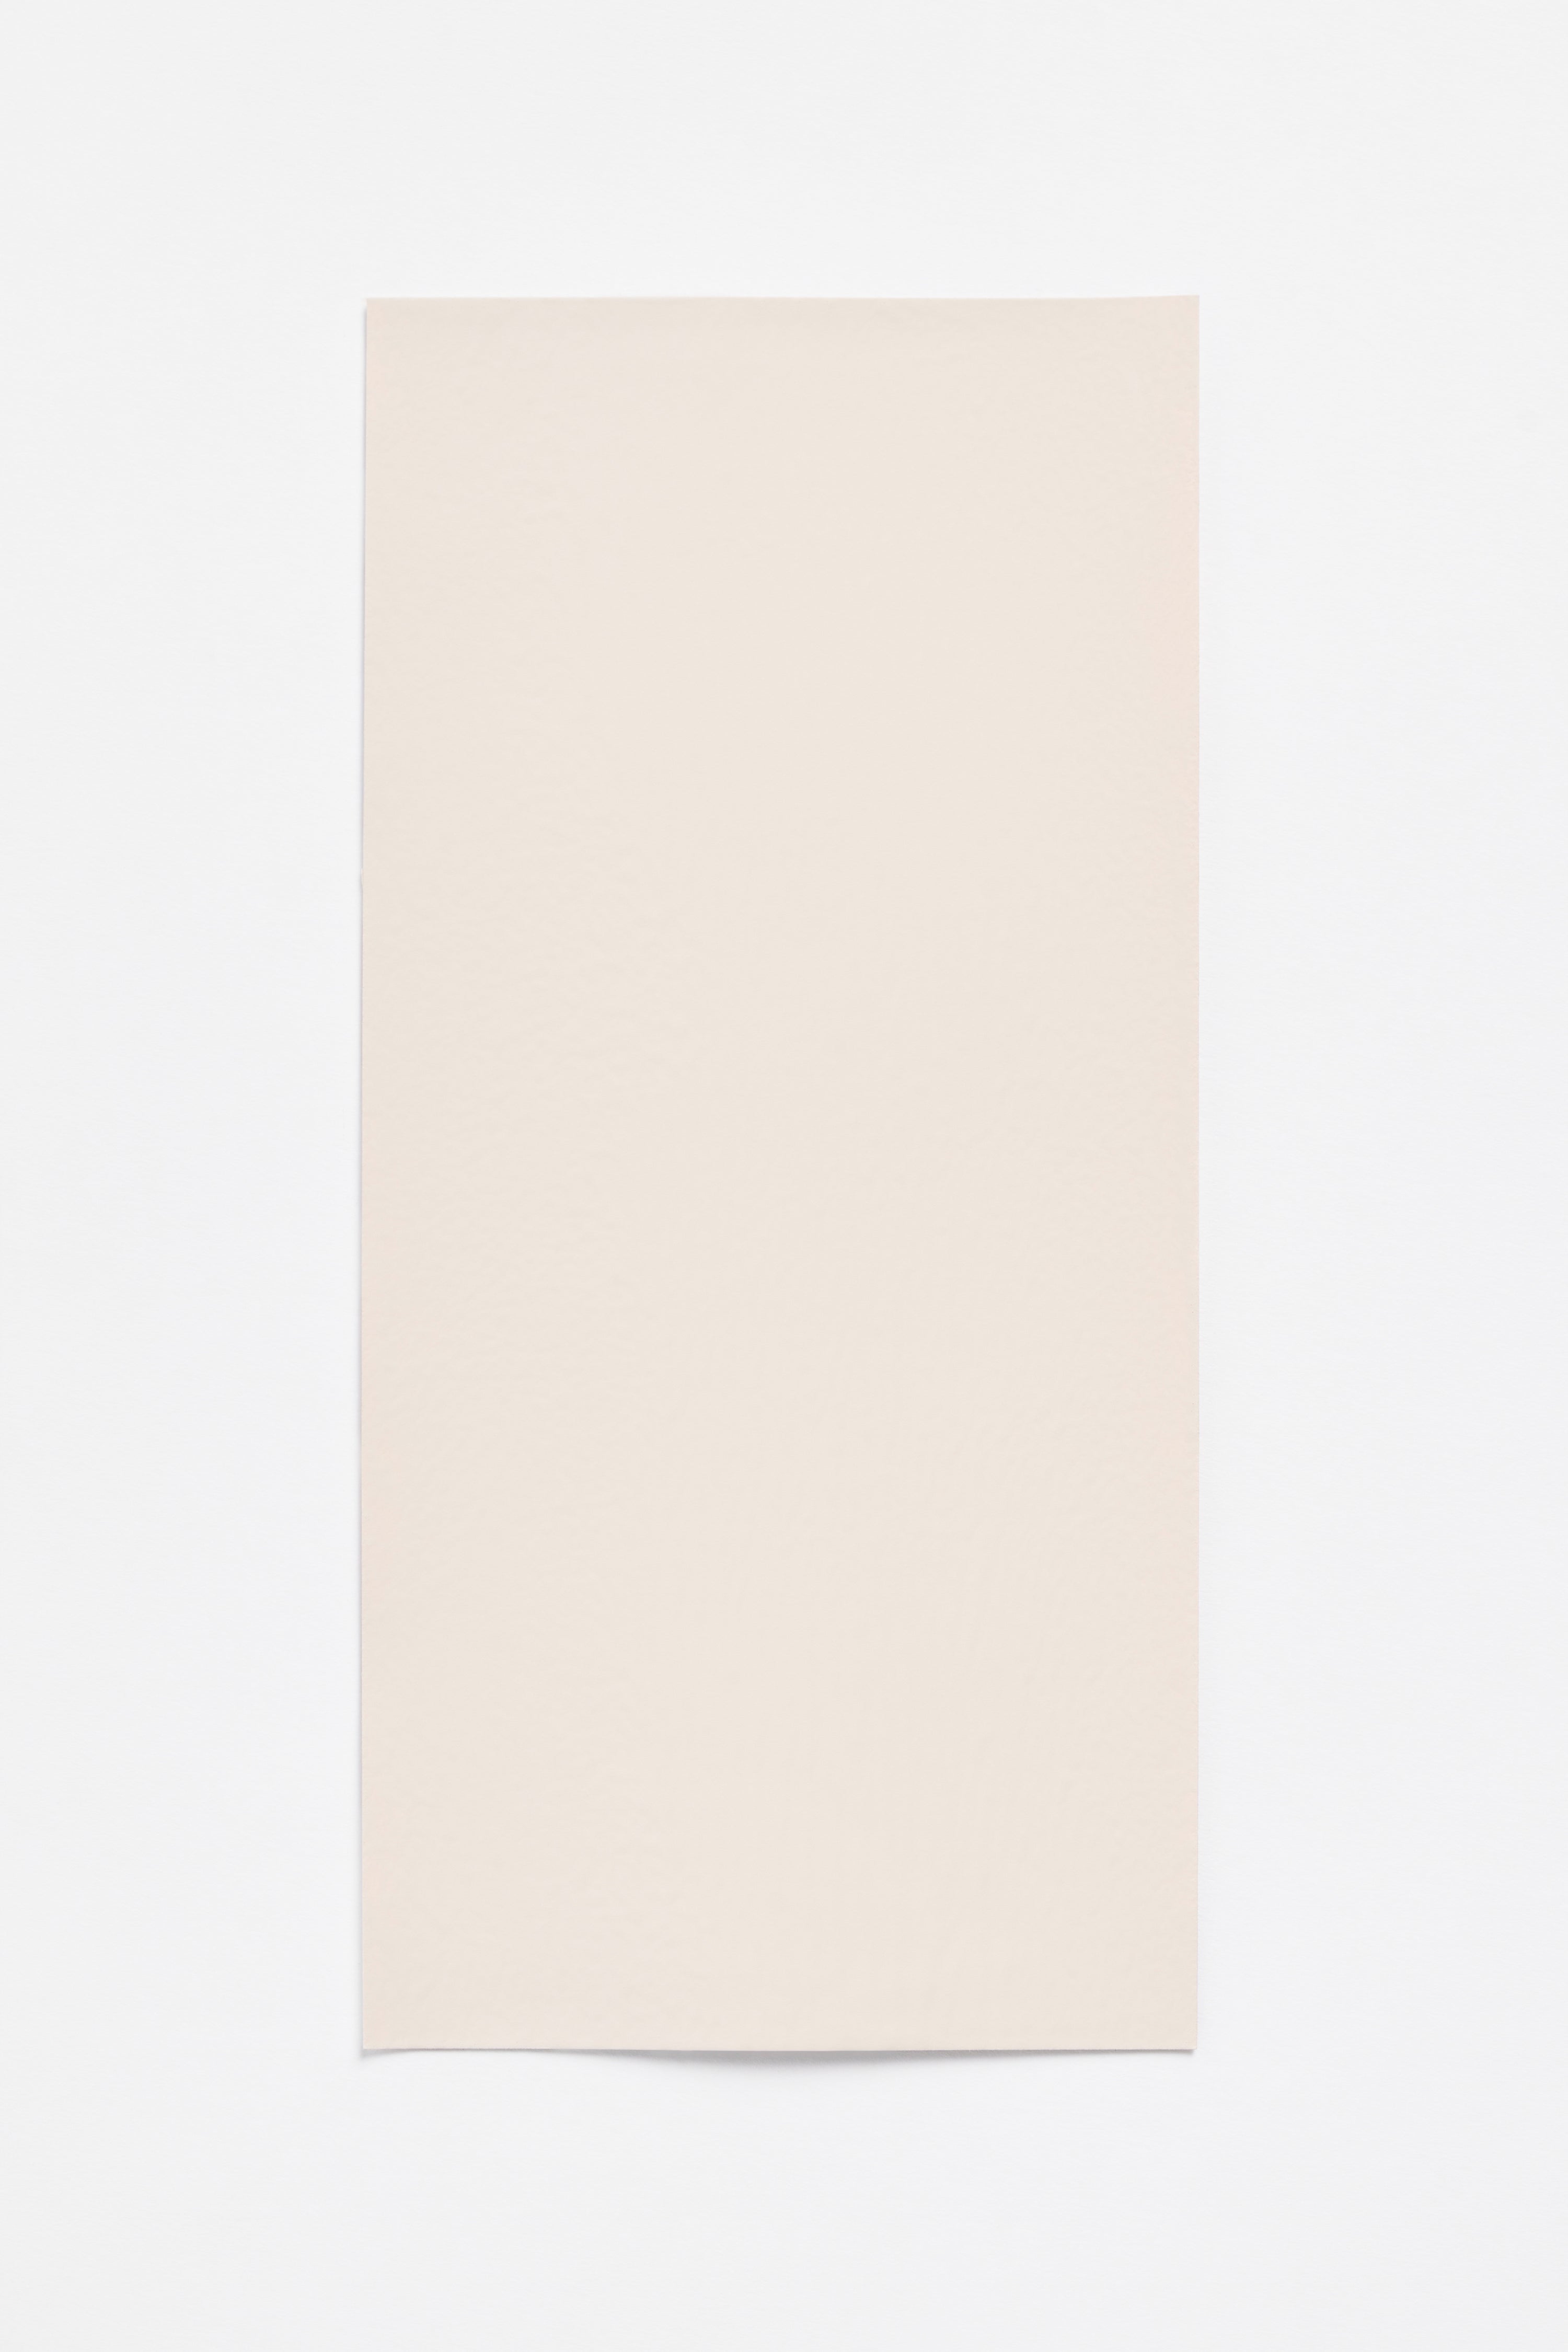 Peach Light — a paint colour developed by Sabine Marcelis for Blēo